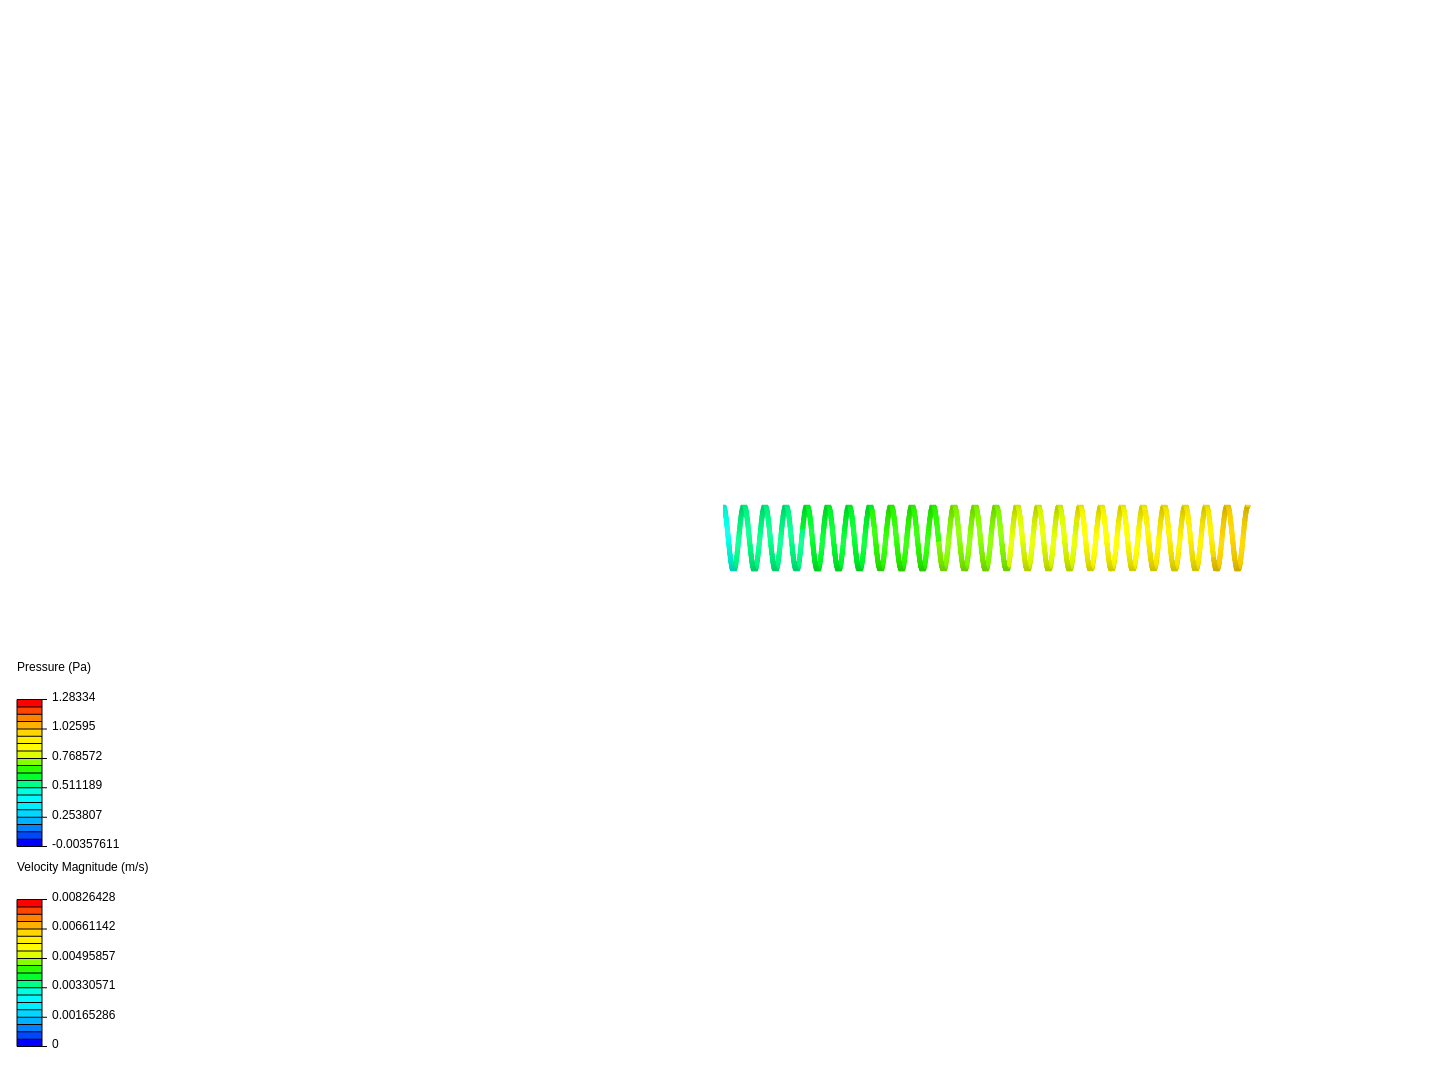 flow in pipe - simplified T gap - longer image